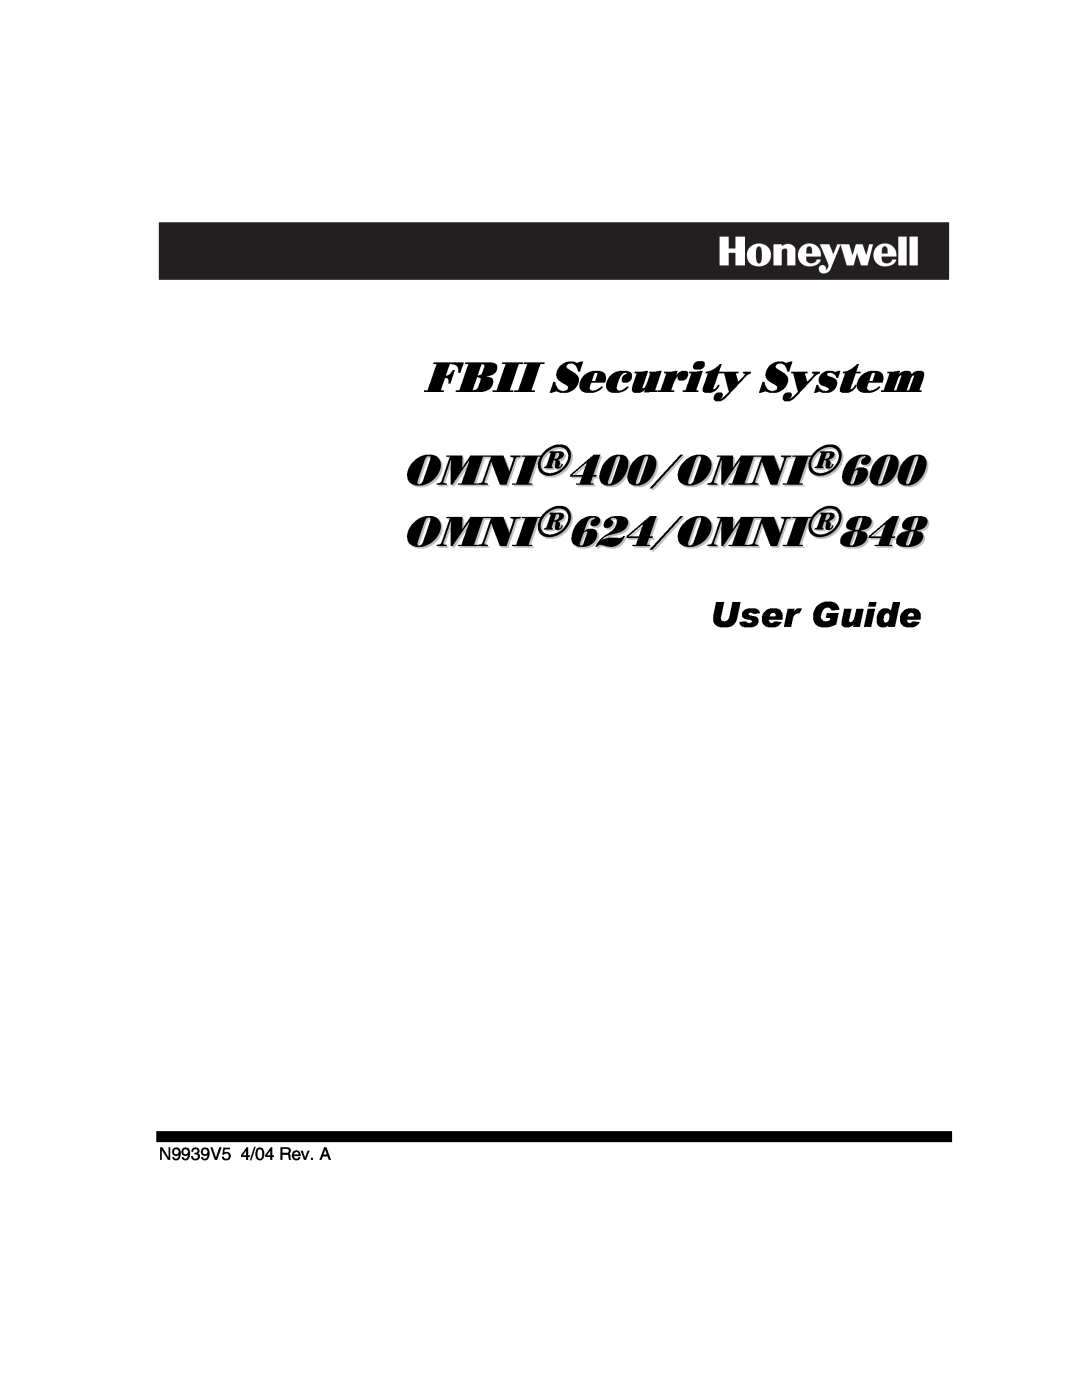 Honeywell manual N9939V5 4/04 Rev. A, FBII Security System, OMNI400/OMNI600 OMNI624/OMNI848, User Guide 